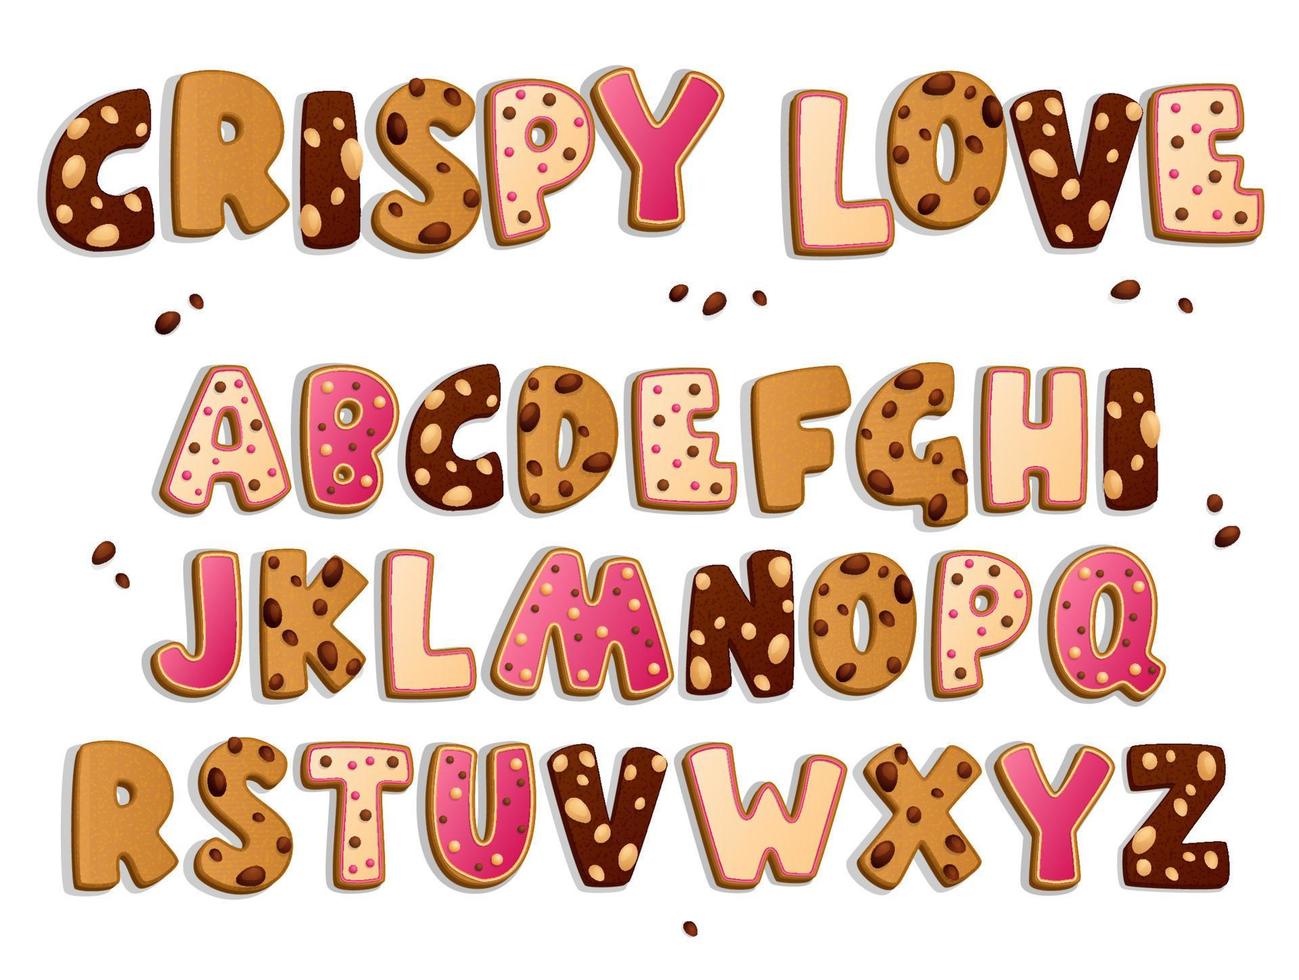 alfabeto de galletas al azar. conjunto de diseño de estilo de galletas de letras. chips y gotas de chololato oscuro y blanco, nueces, azúcar glase, perlas, dulces decorativos. conjunto de vectores comida dulce.